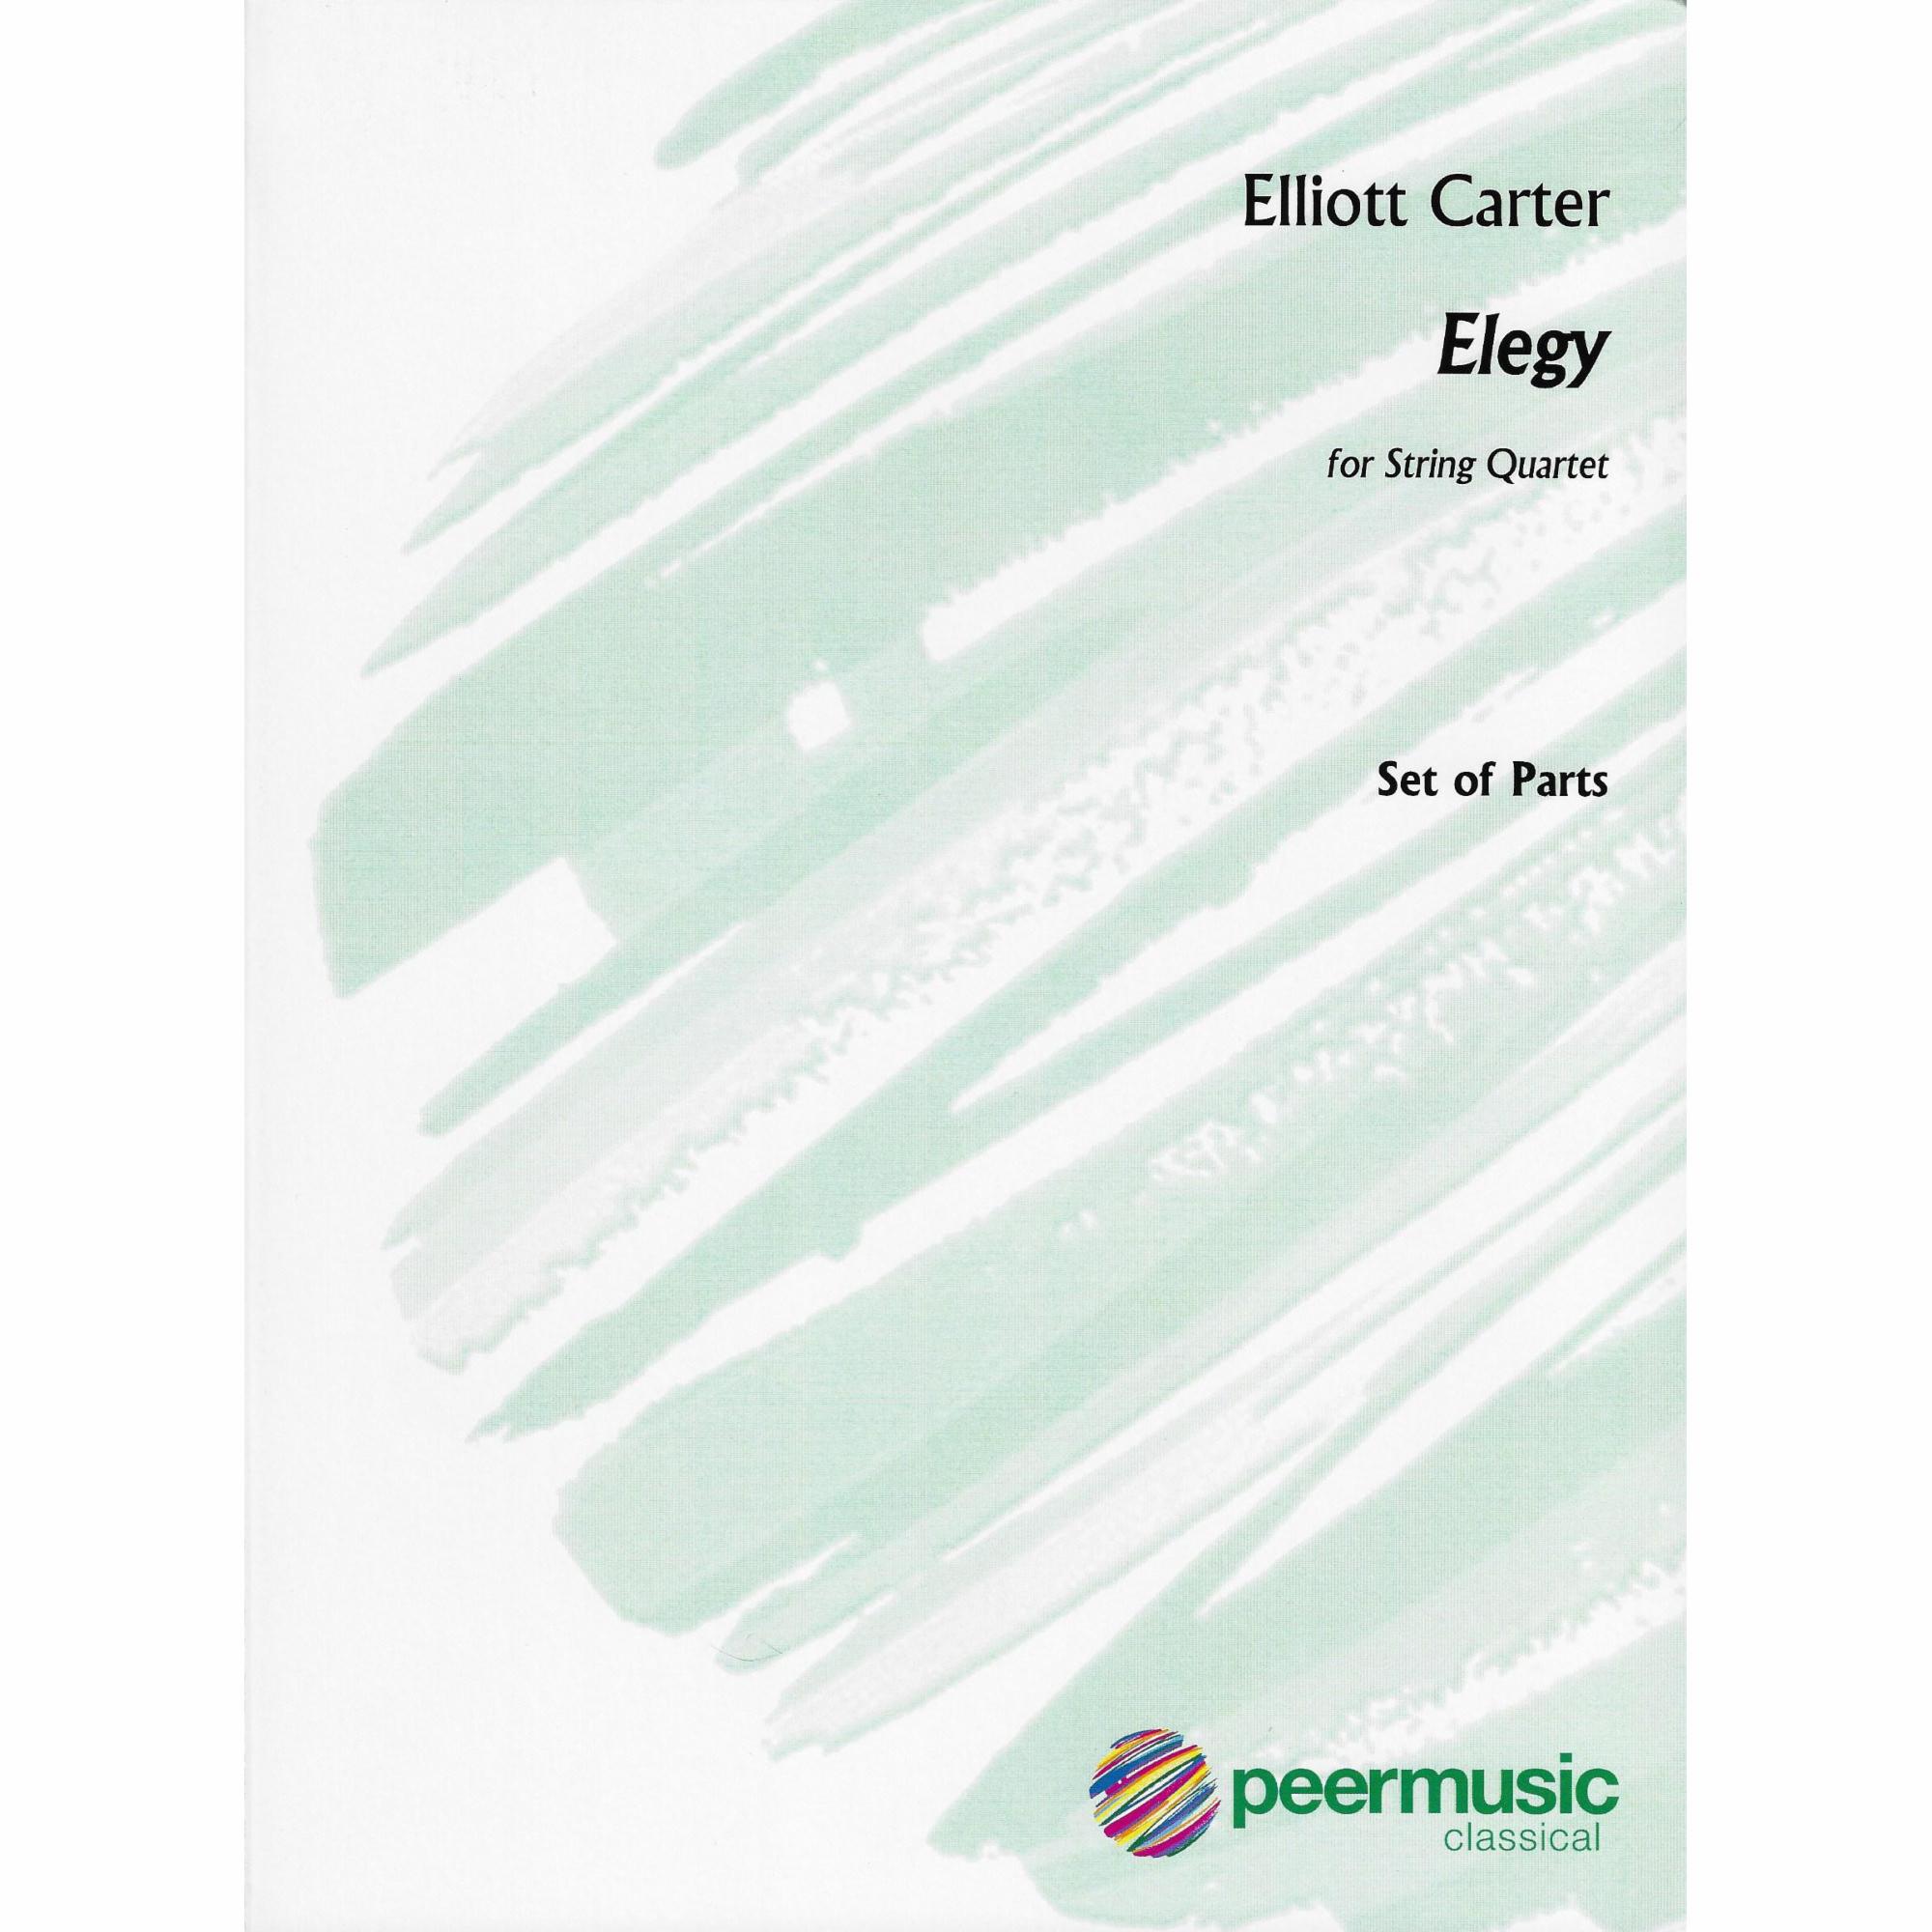 Carter -- Elegy for String Quartet